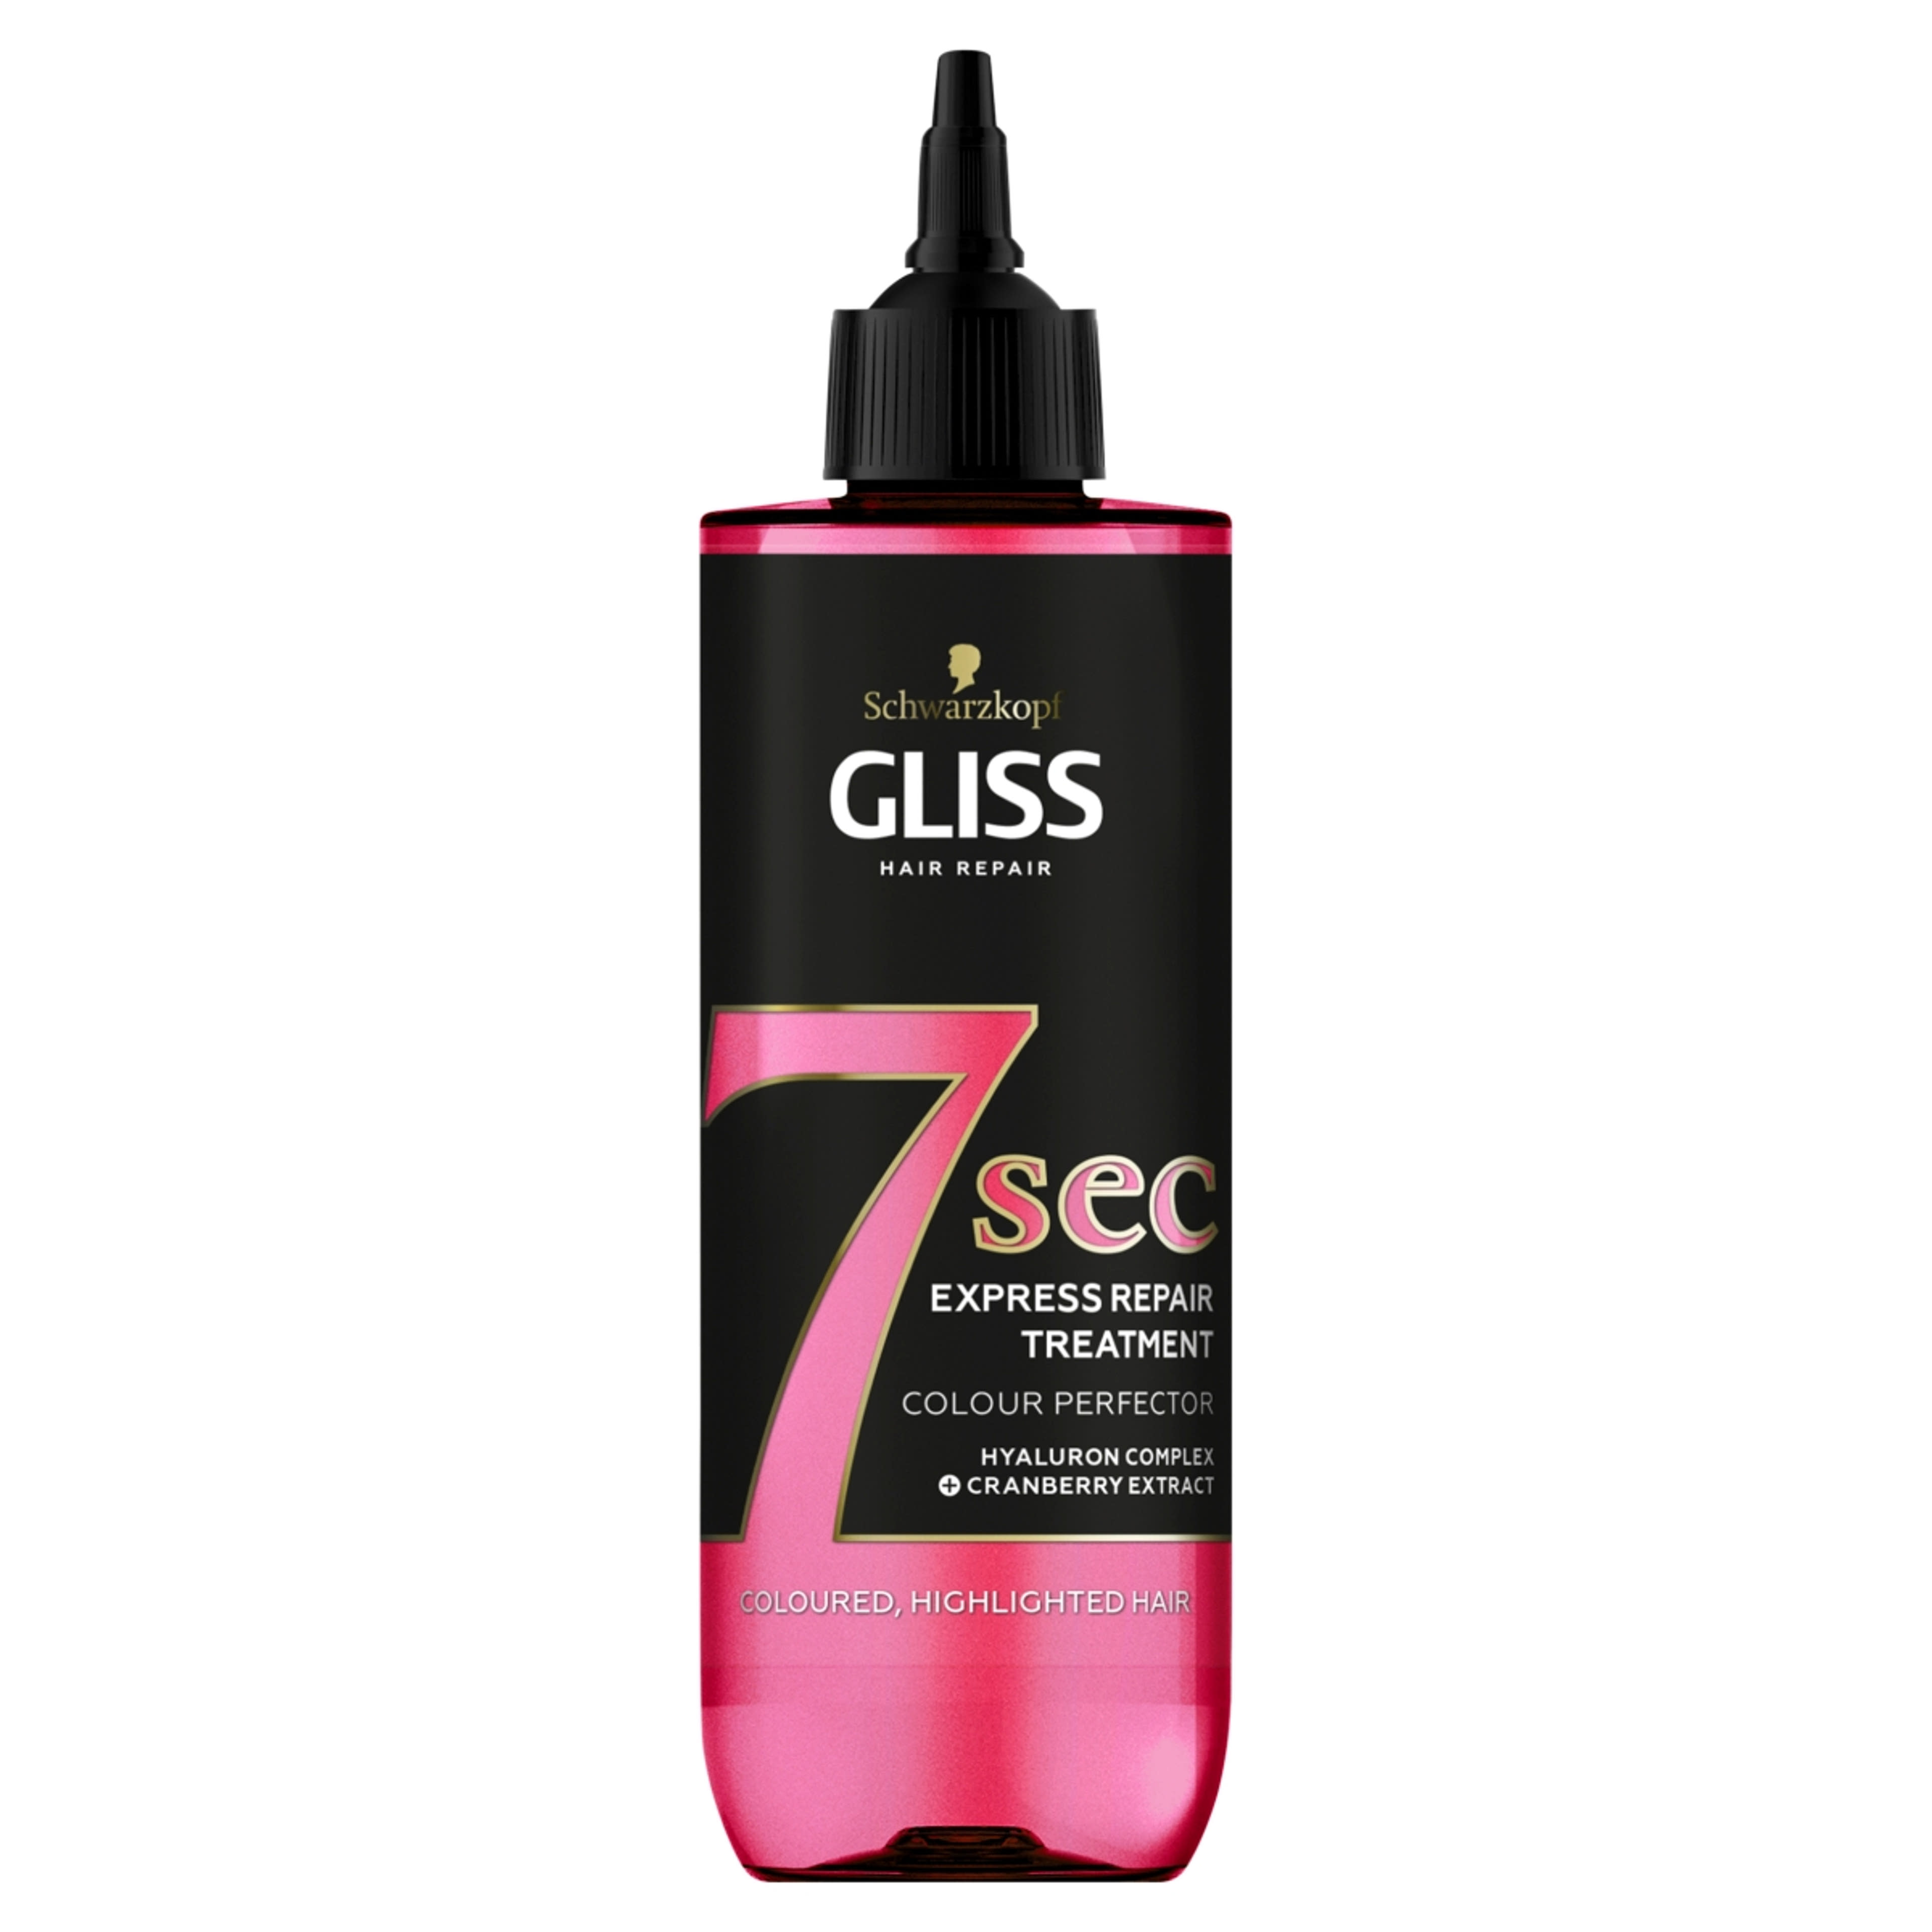 Gliss Express Repair hajpakolás 7sec ragyogó szín - 200 ml-1